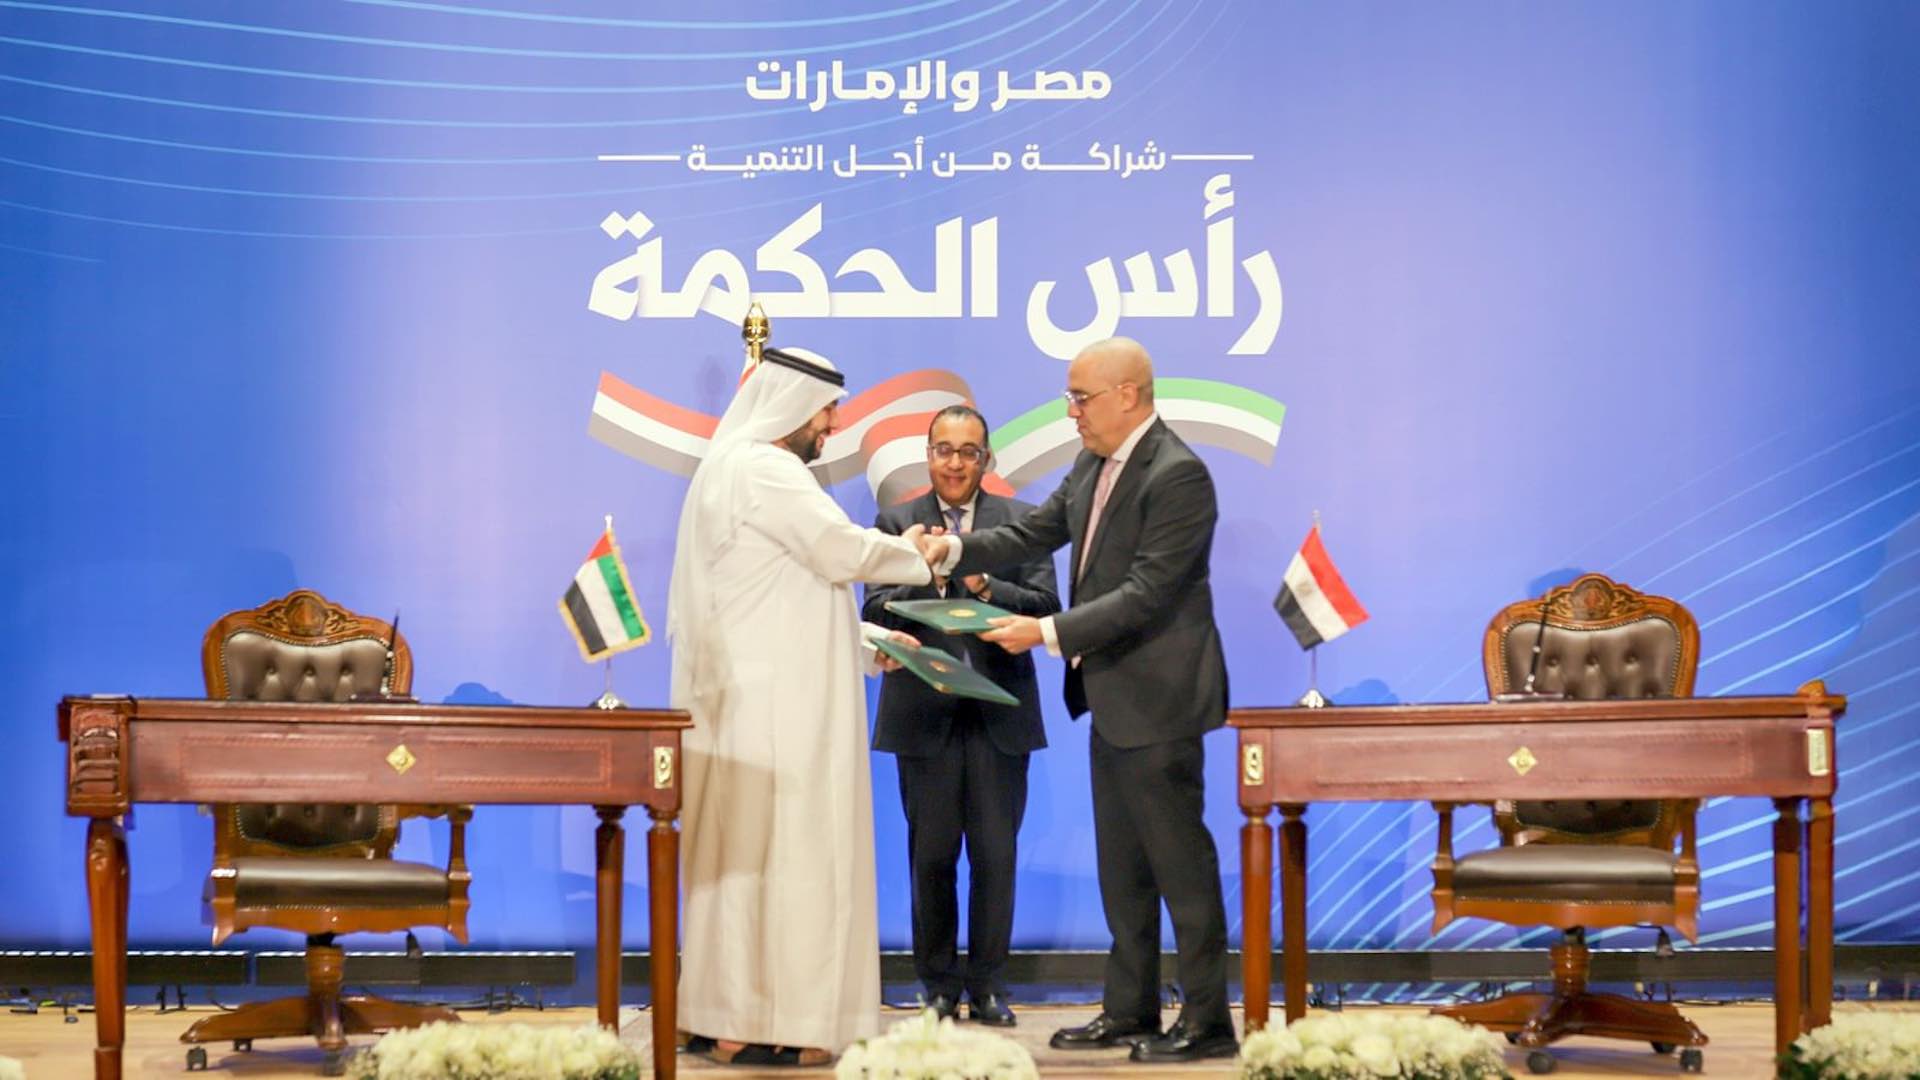 埃及与阿联酋建立1500亿美元的投资伙伴关系